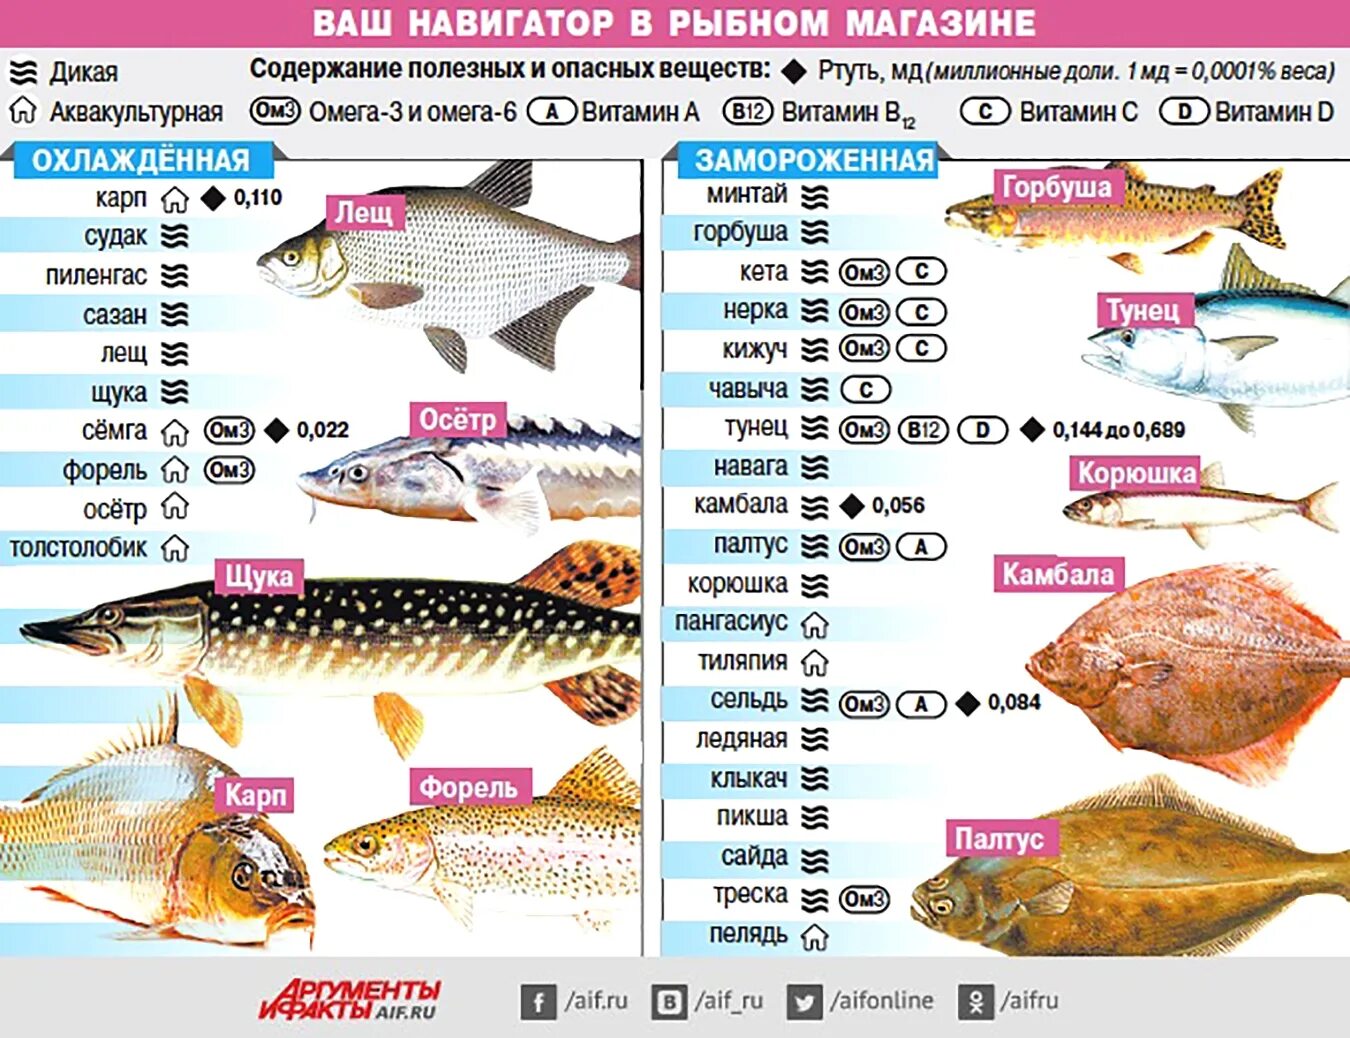 Сколько калорий в щуке. Самые популярные сорта рыбы. Самые полезные сорта рыбы. Содержание витаминов в рыбе. Таблица полезной рыбы.